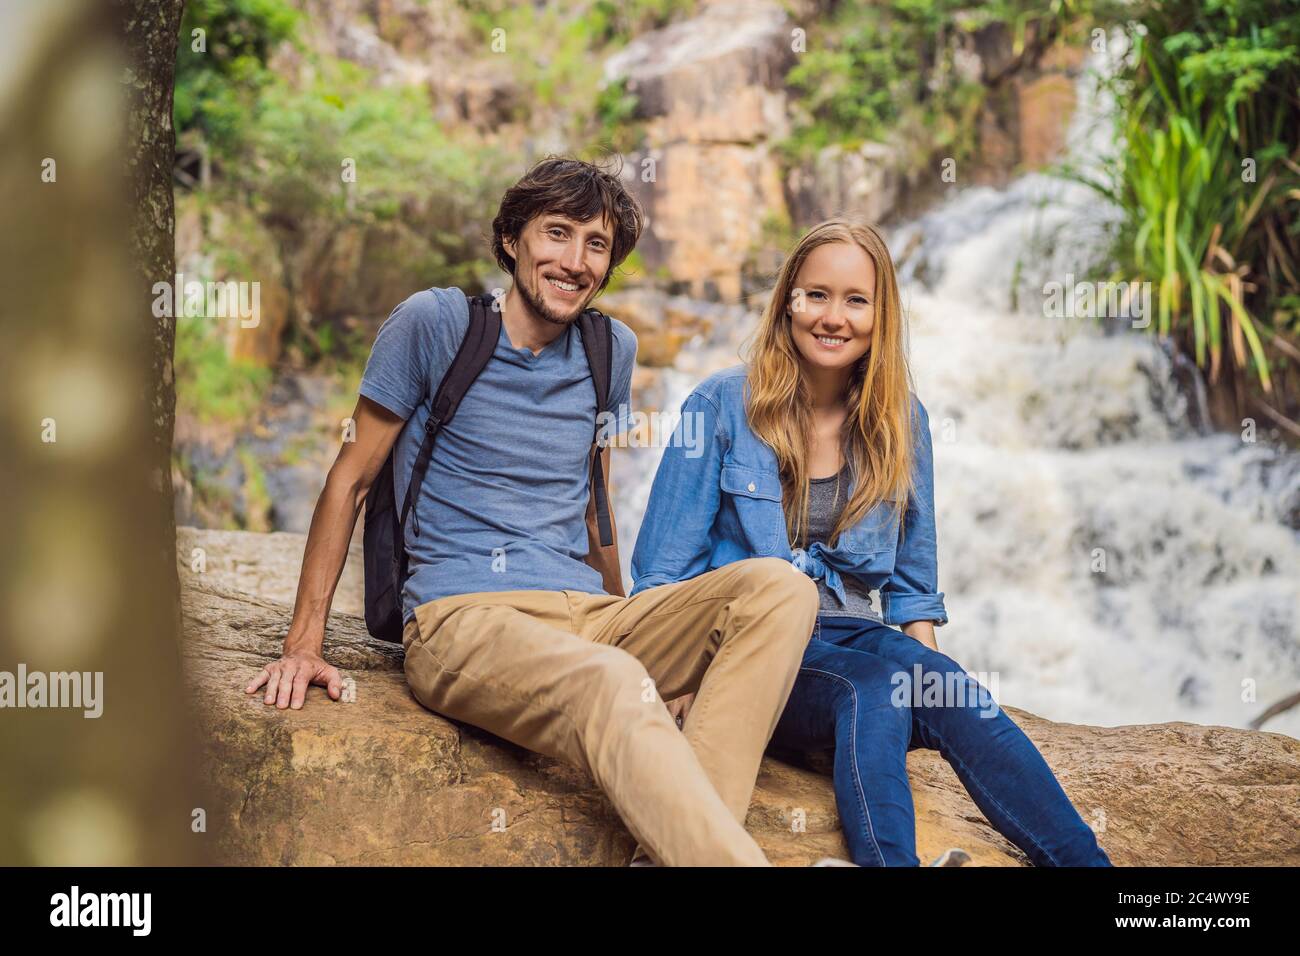 Coppia di turisti con uno zaino sullo sfondo di una cascata Foto Stock